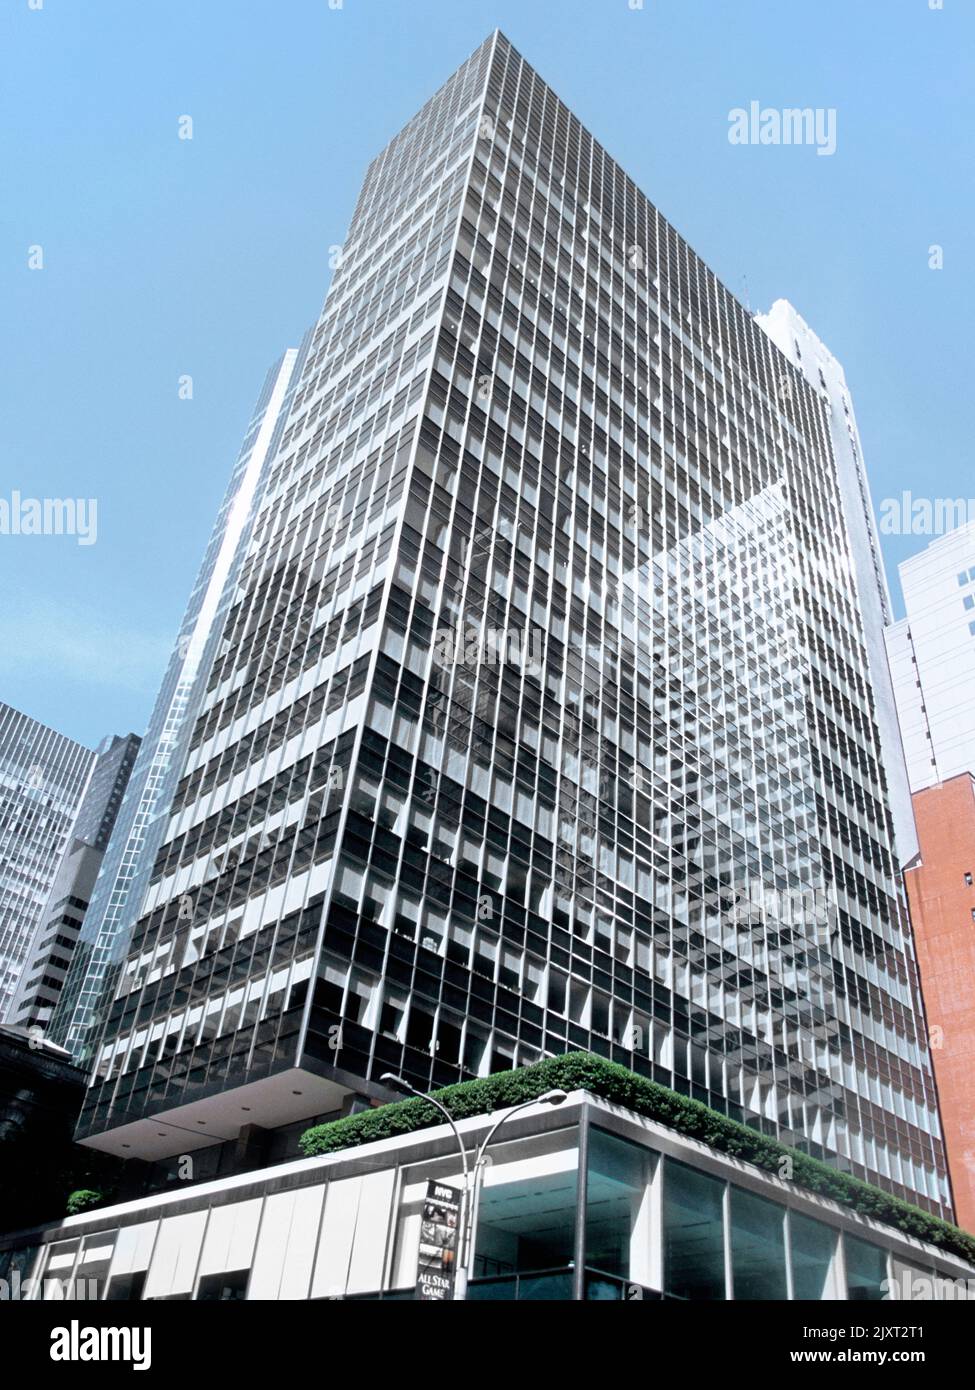 Lever House skyscraper facade. New York City Park Avenue. Futuristic architecture glass box International Style, Stock Photo